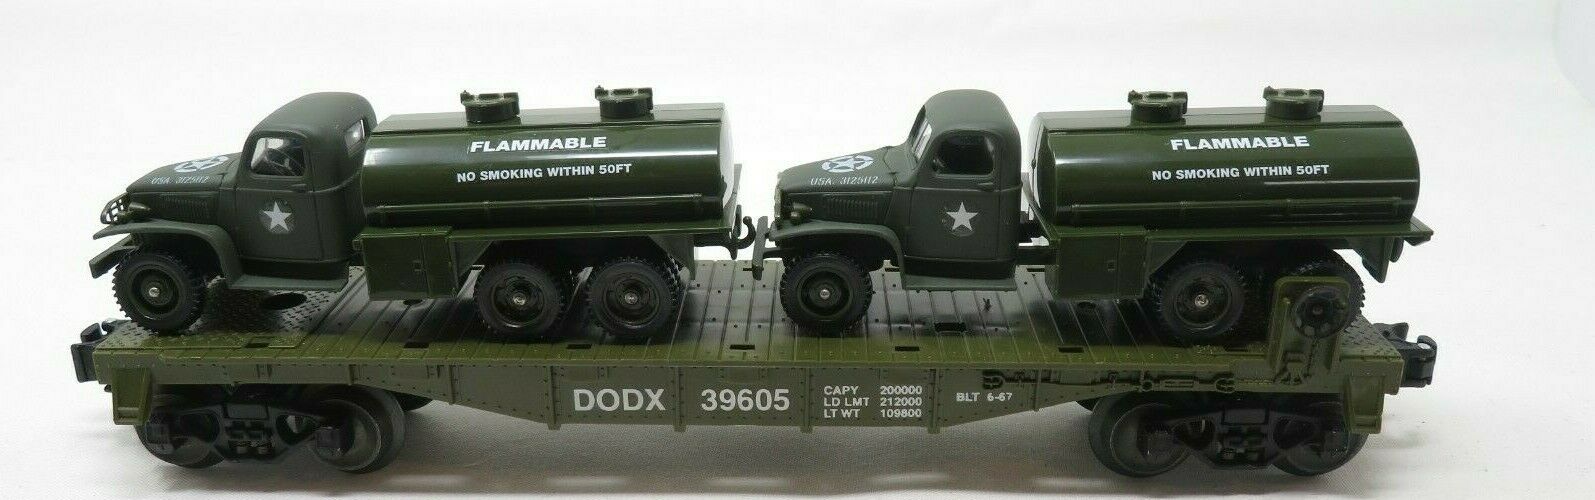 Geller 39605 Army GMC 2 1/2 Ton Fuel Tanker DODX Flatcar NIB